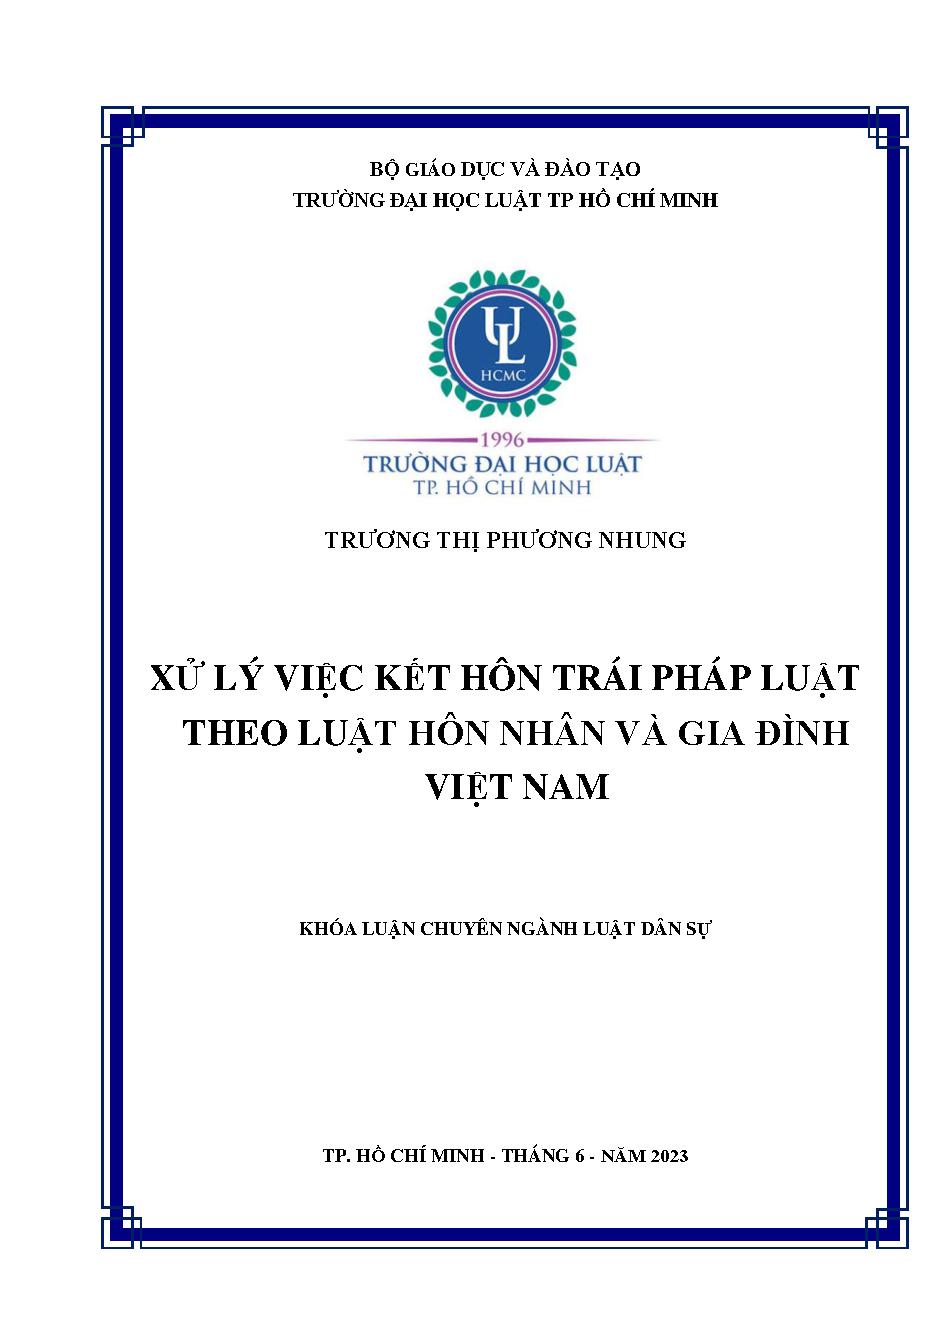 Xử lý việc kết hôn trái pháp luật theo Luật Hôn nhân và gia đình Việt Nam